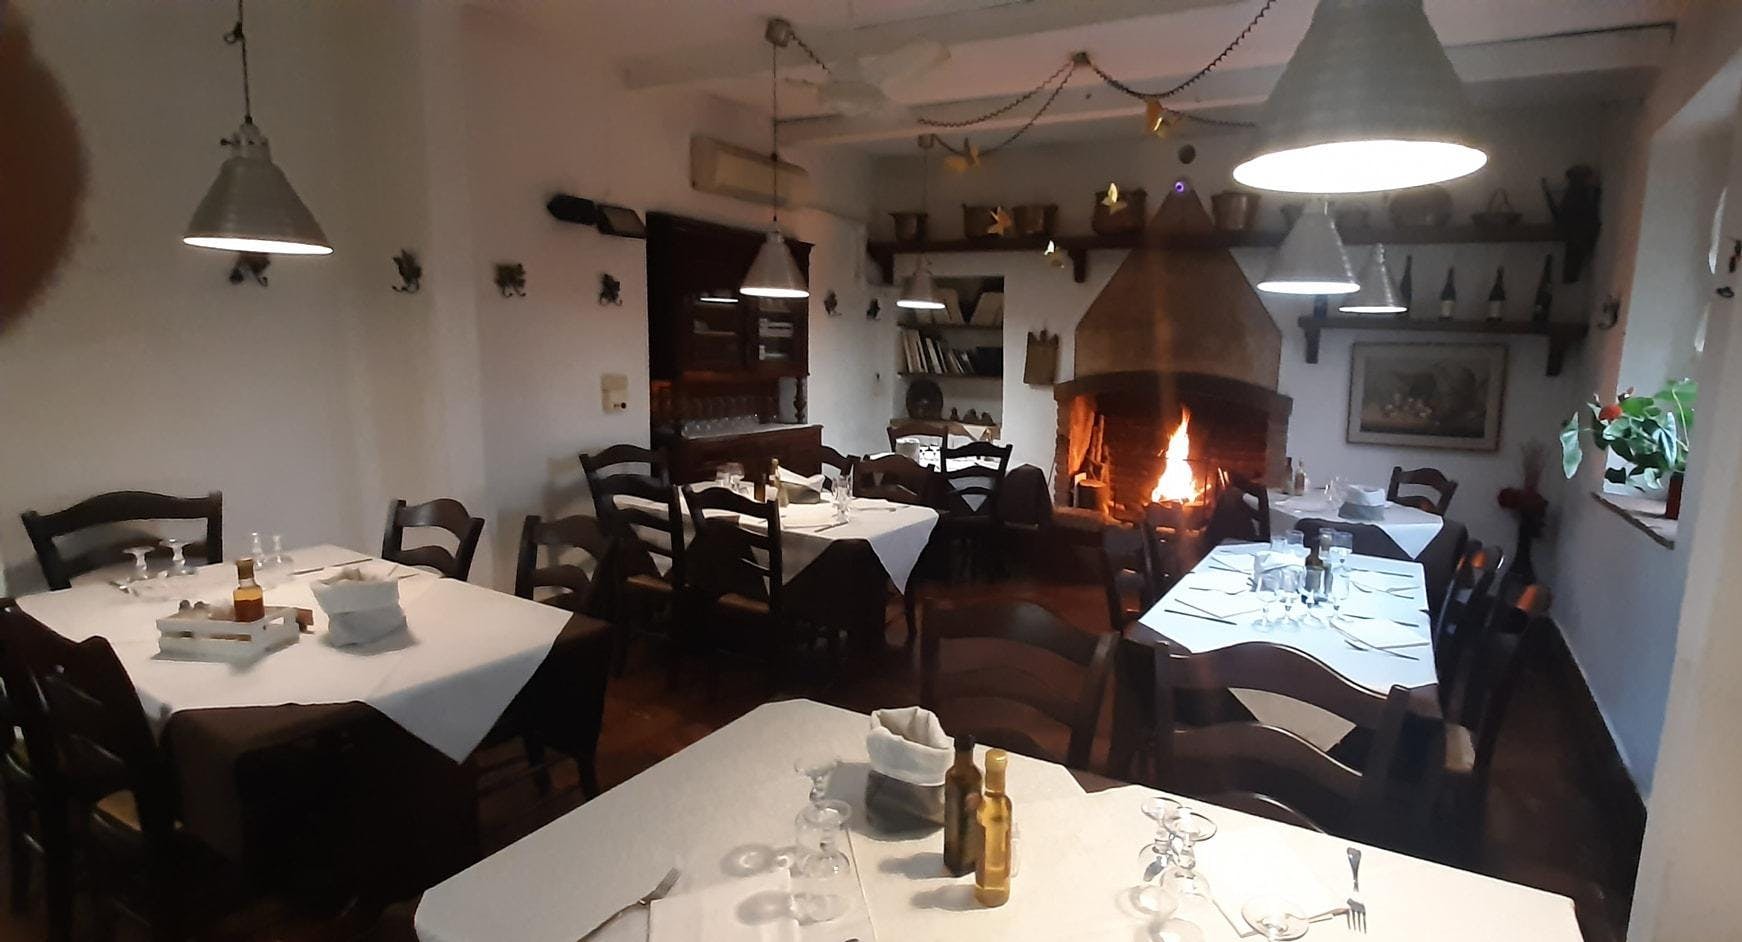 Photo of restaurant Trattoria Fontanì in Provaglio d'Iseo, Brescia